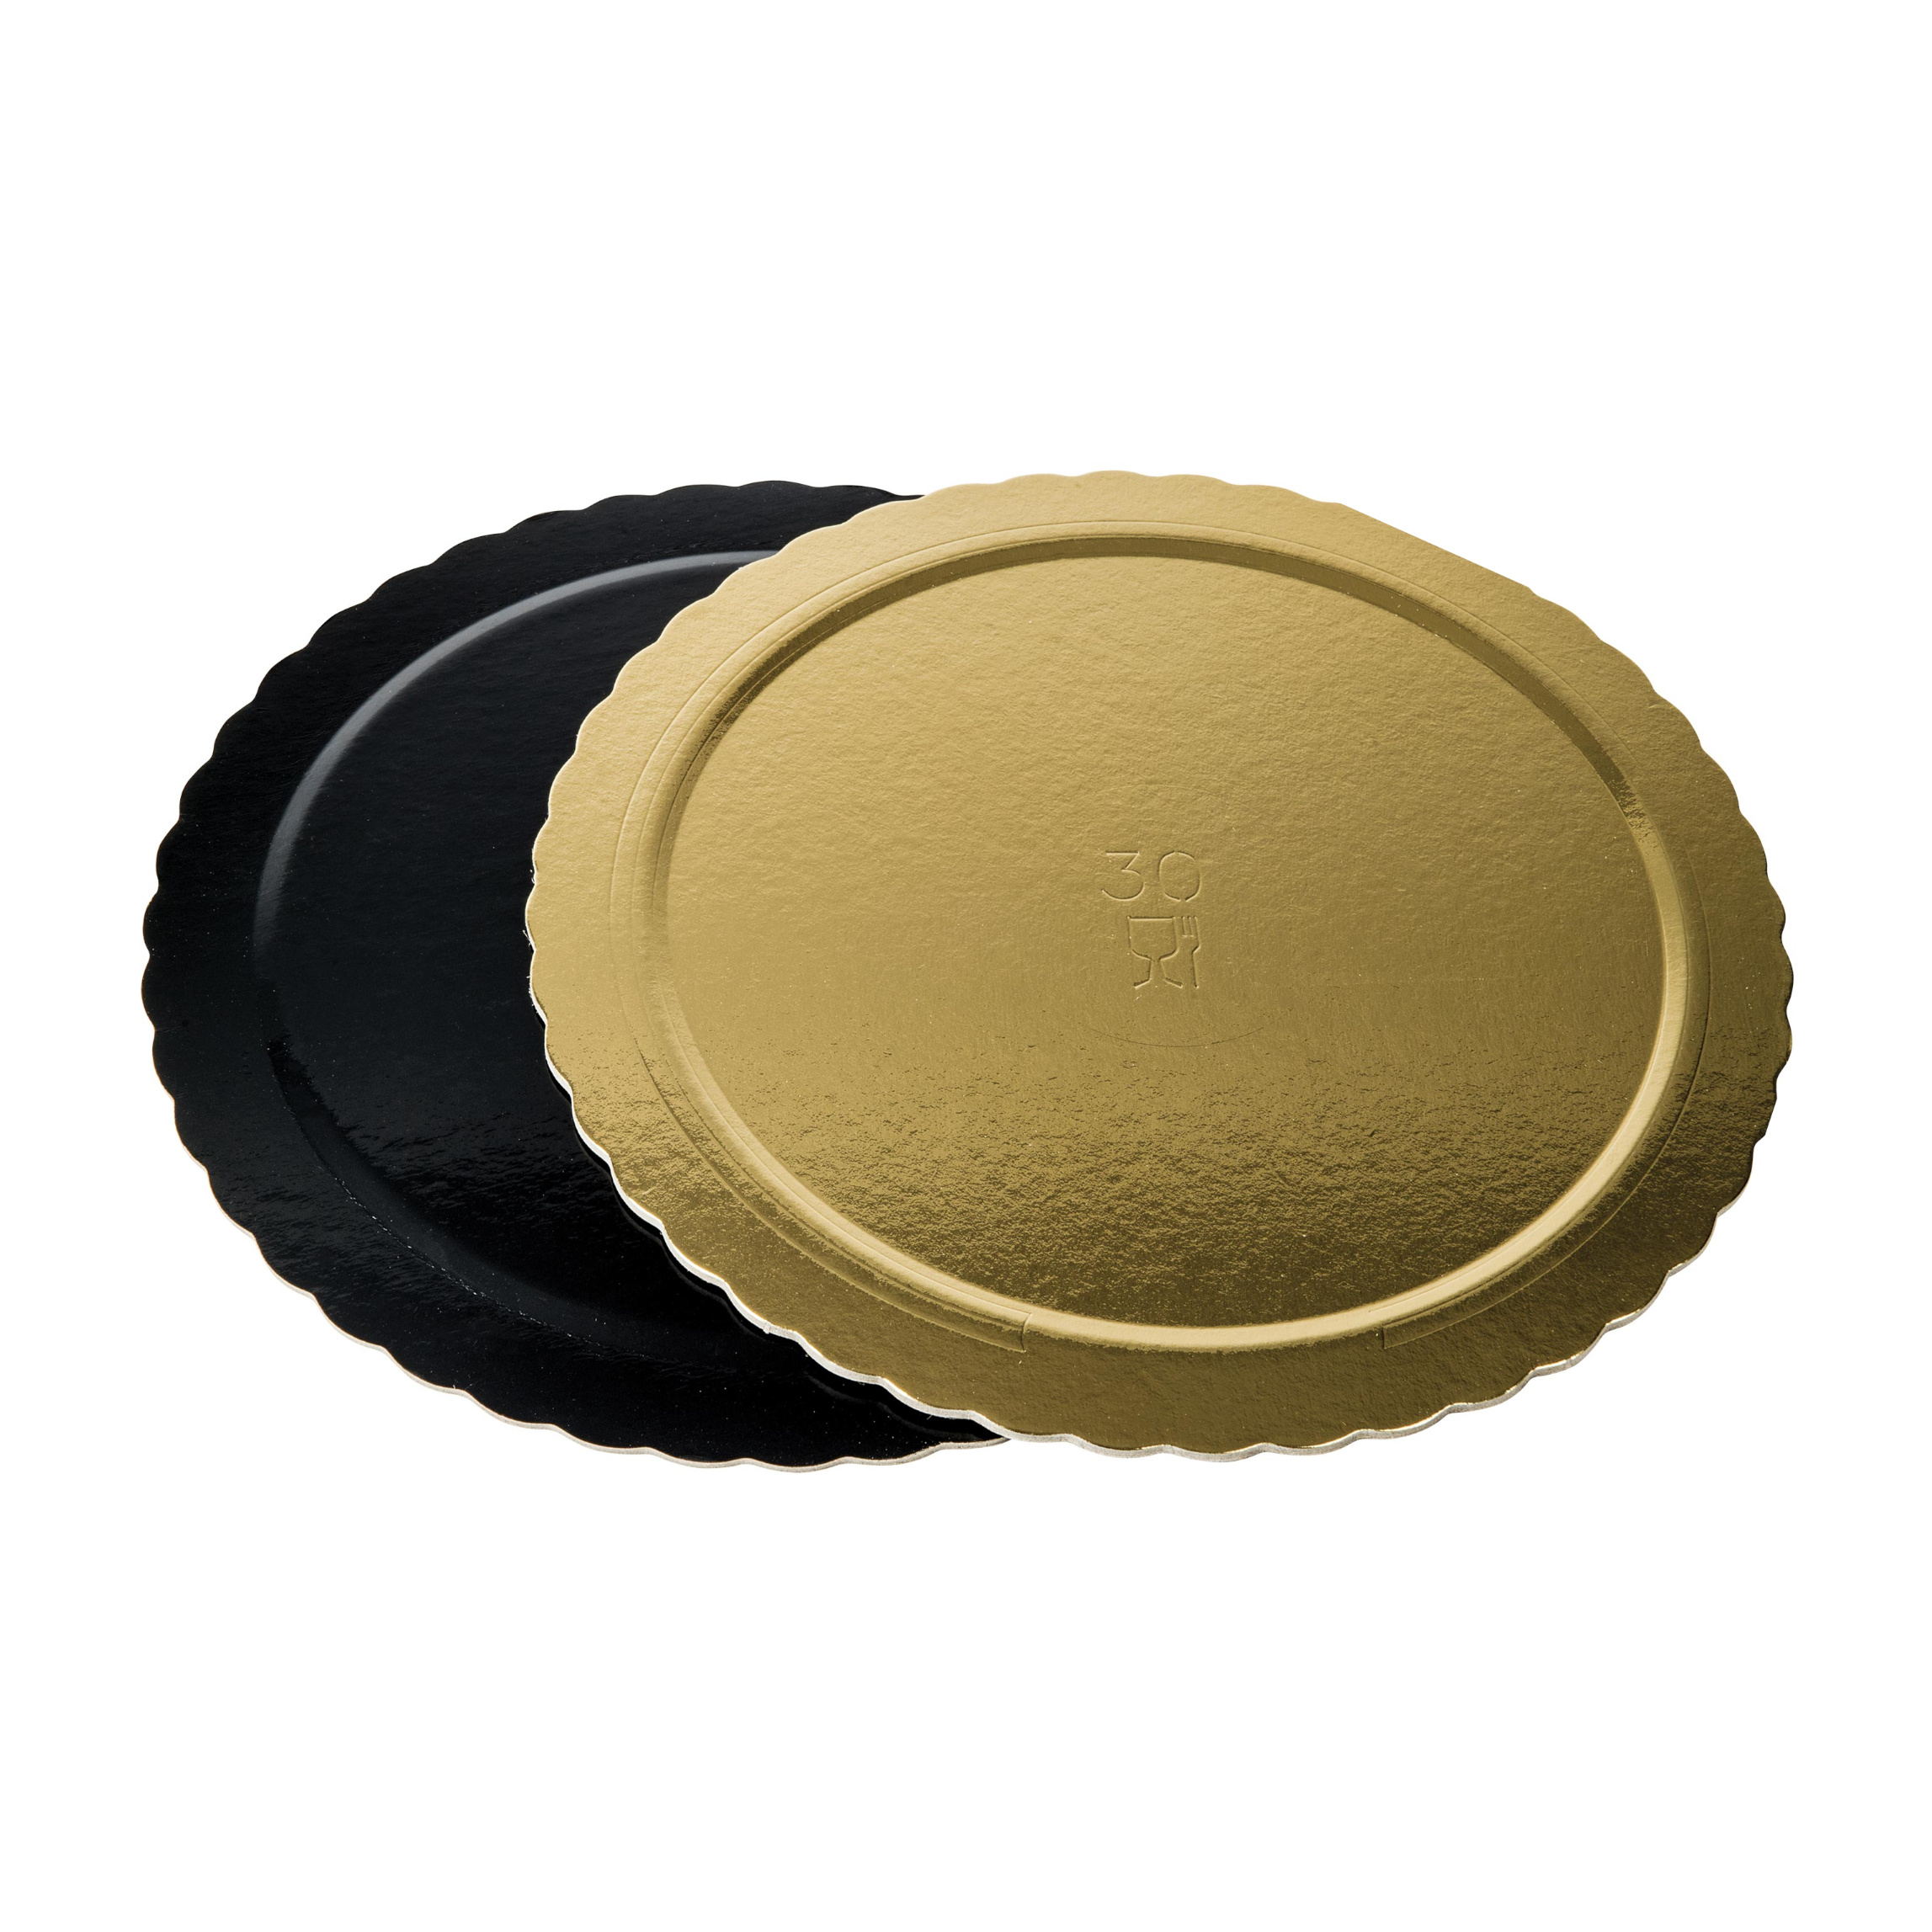 Dischi sottotorta kappati oro/nero 20cm pacchetto da 10kg